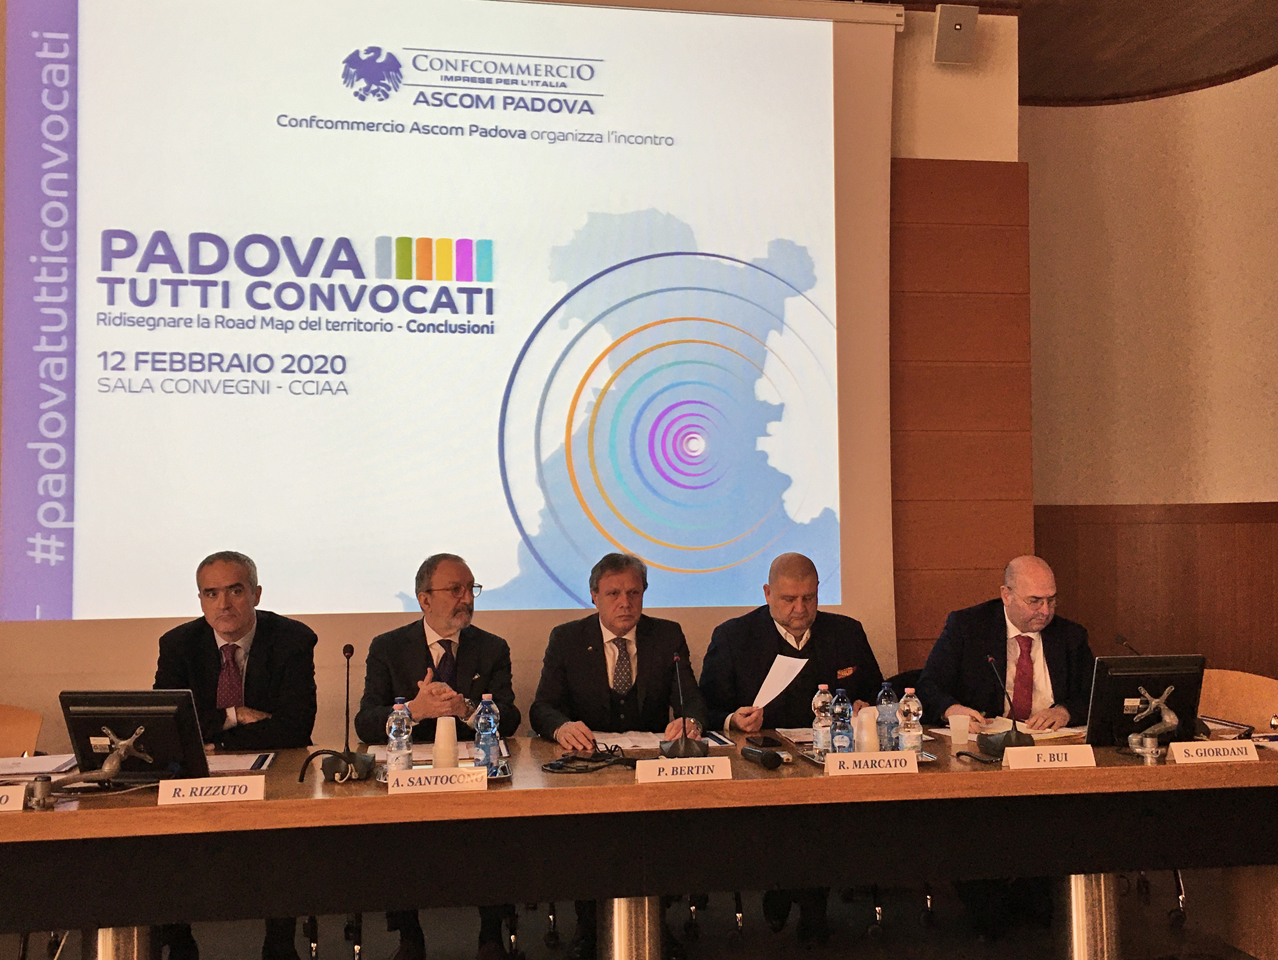 Tavolo dei relatori all'incontro Padova tutti convocati